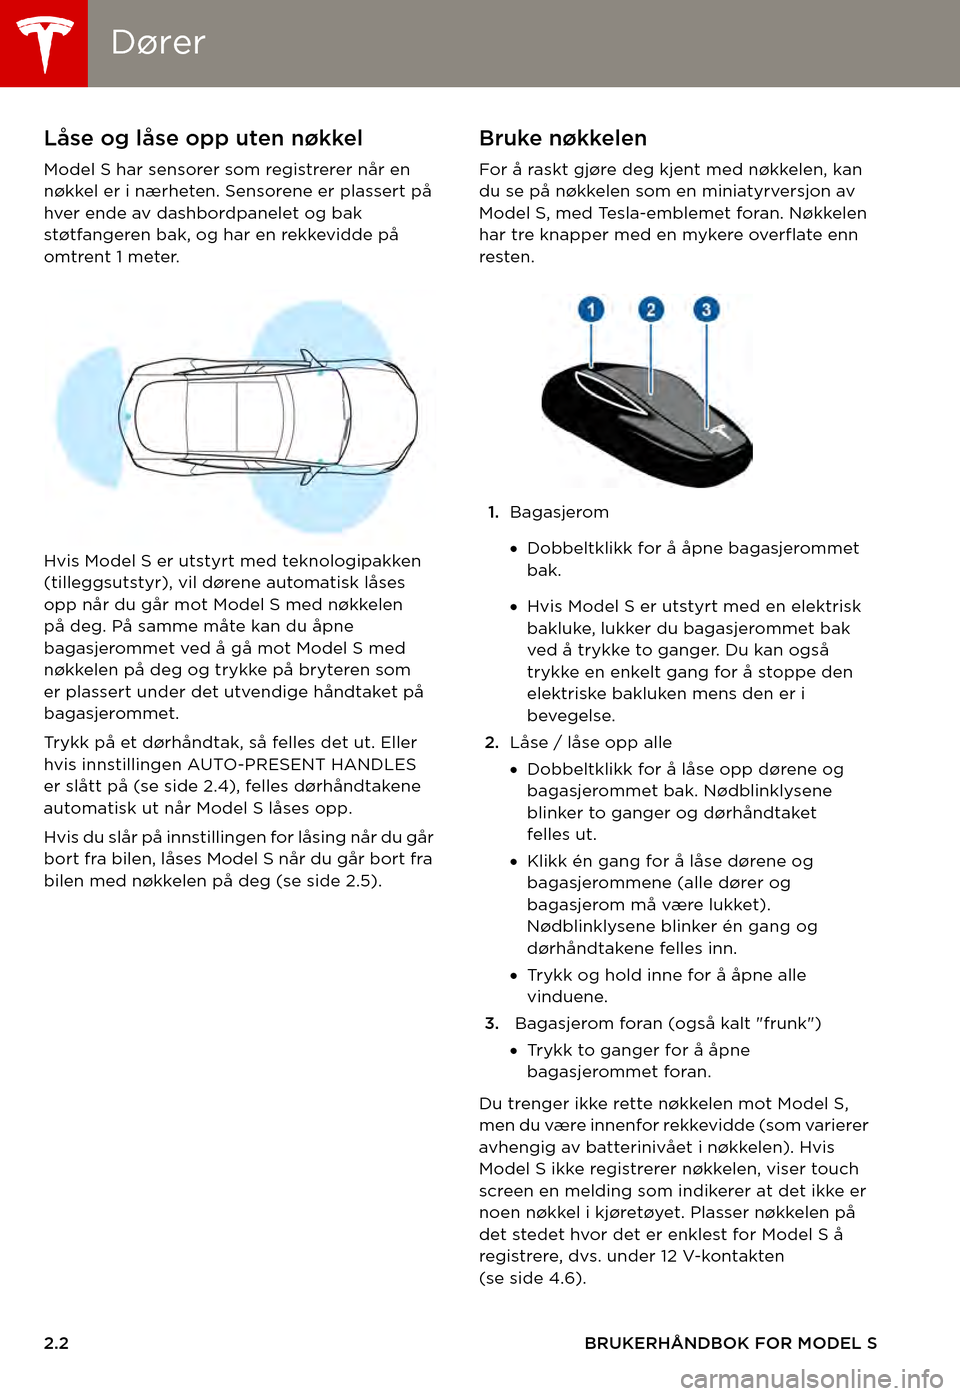 TESLA MODEL S 2015  Brukerhåndbok (in Norwegian) DørerDører
2.2BRUKERHÅNDBOK FOR MODEL S
ÅPNE OG LUKKEDørerLåse og låse opp uten nøkkel
Model S har sensorer som registrerer når en nøkkel er i nærheten. Sensorene er plassert på hver ende 